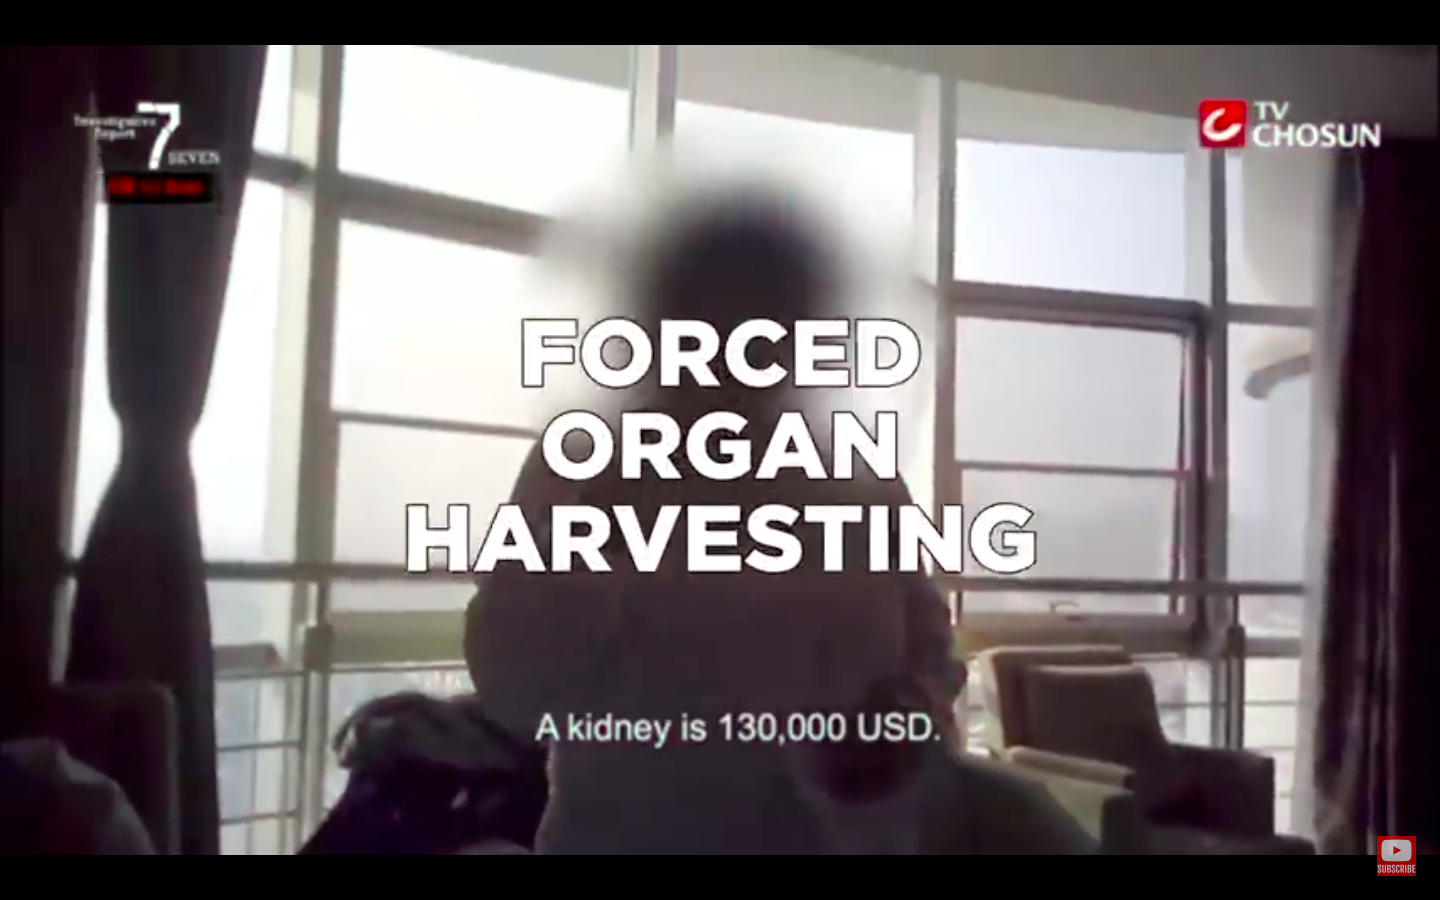 China's Organ Harvesting Is Real